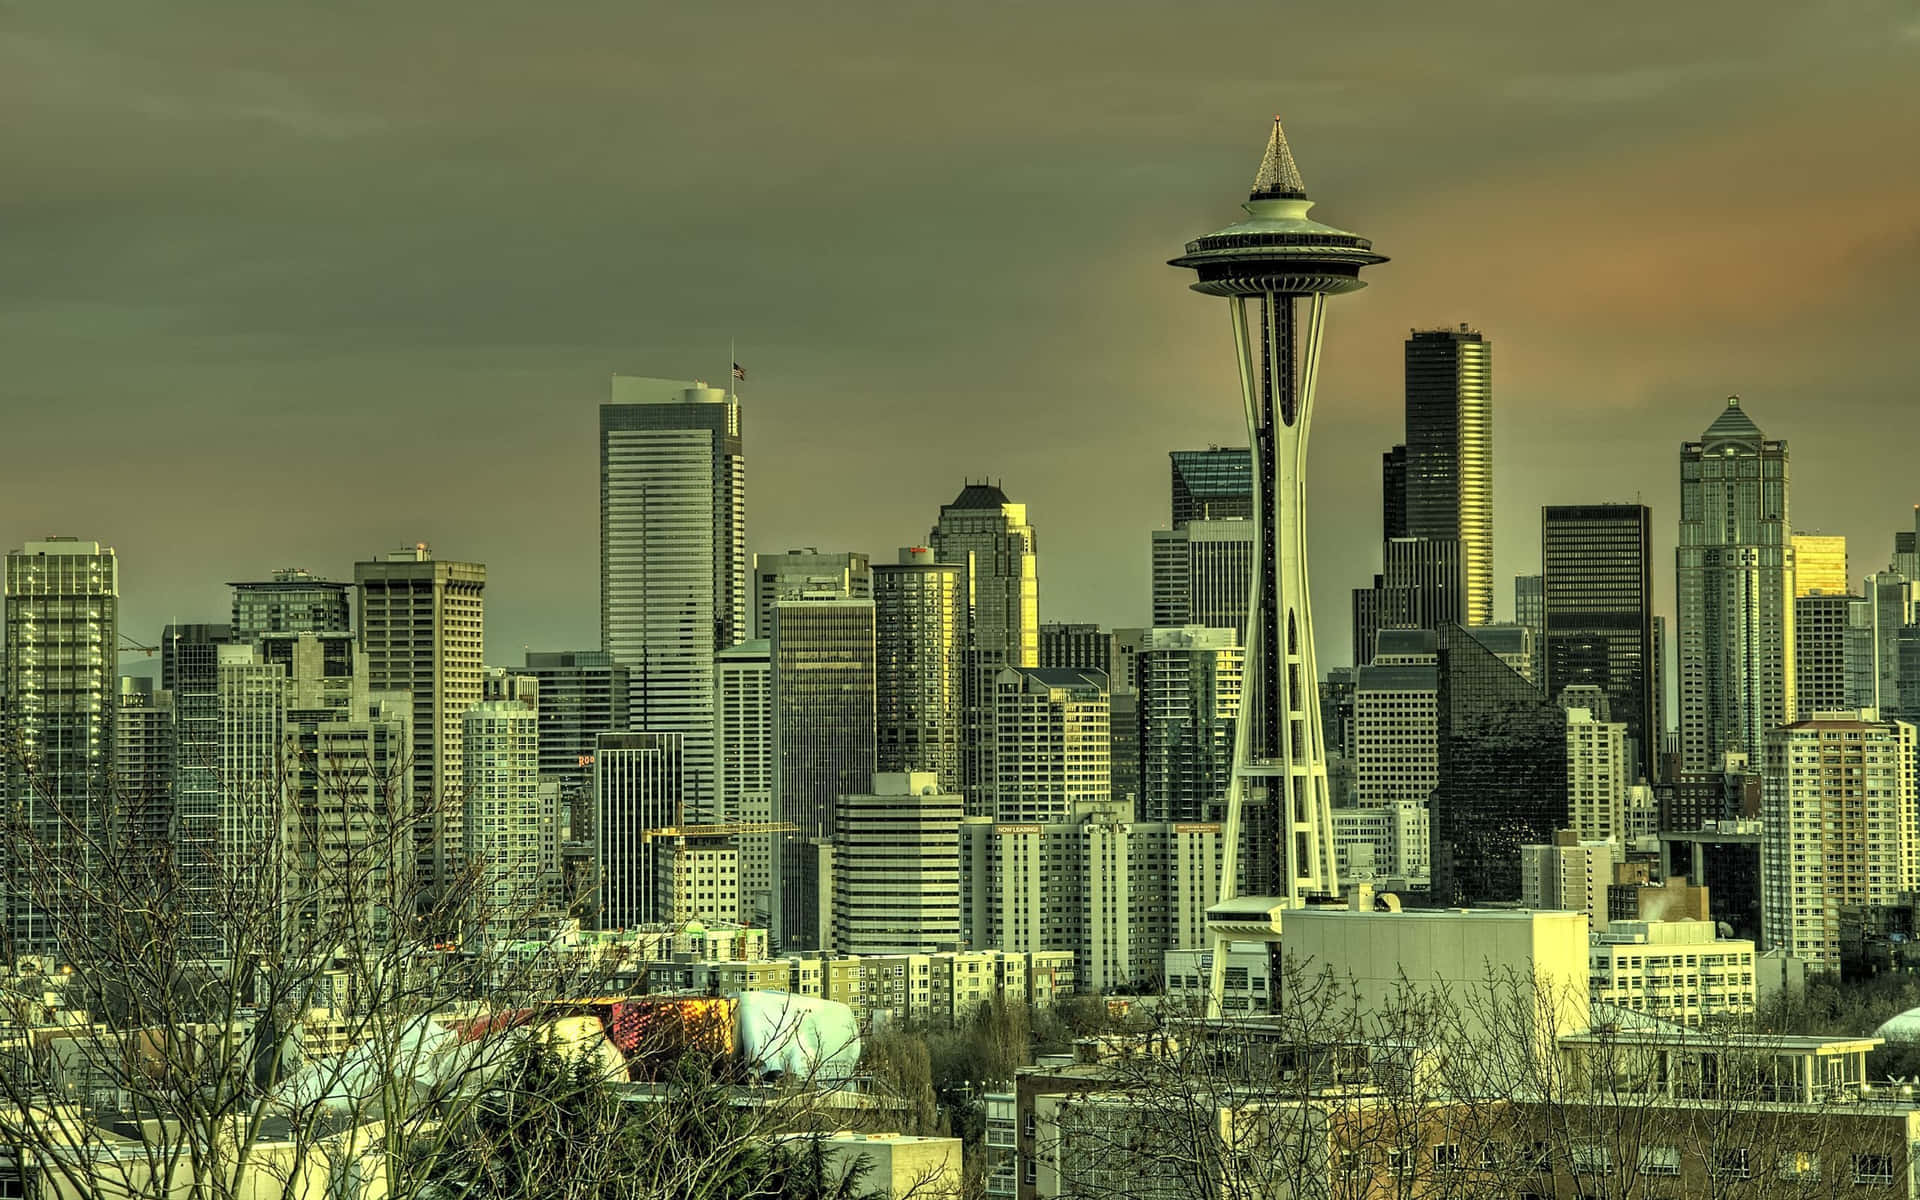 Seattlestadtbild Bei Sonnenuntergang Wallpaper